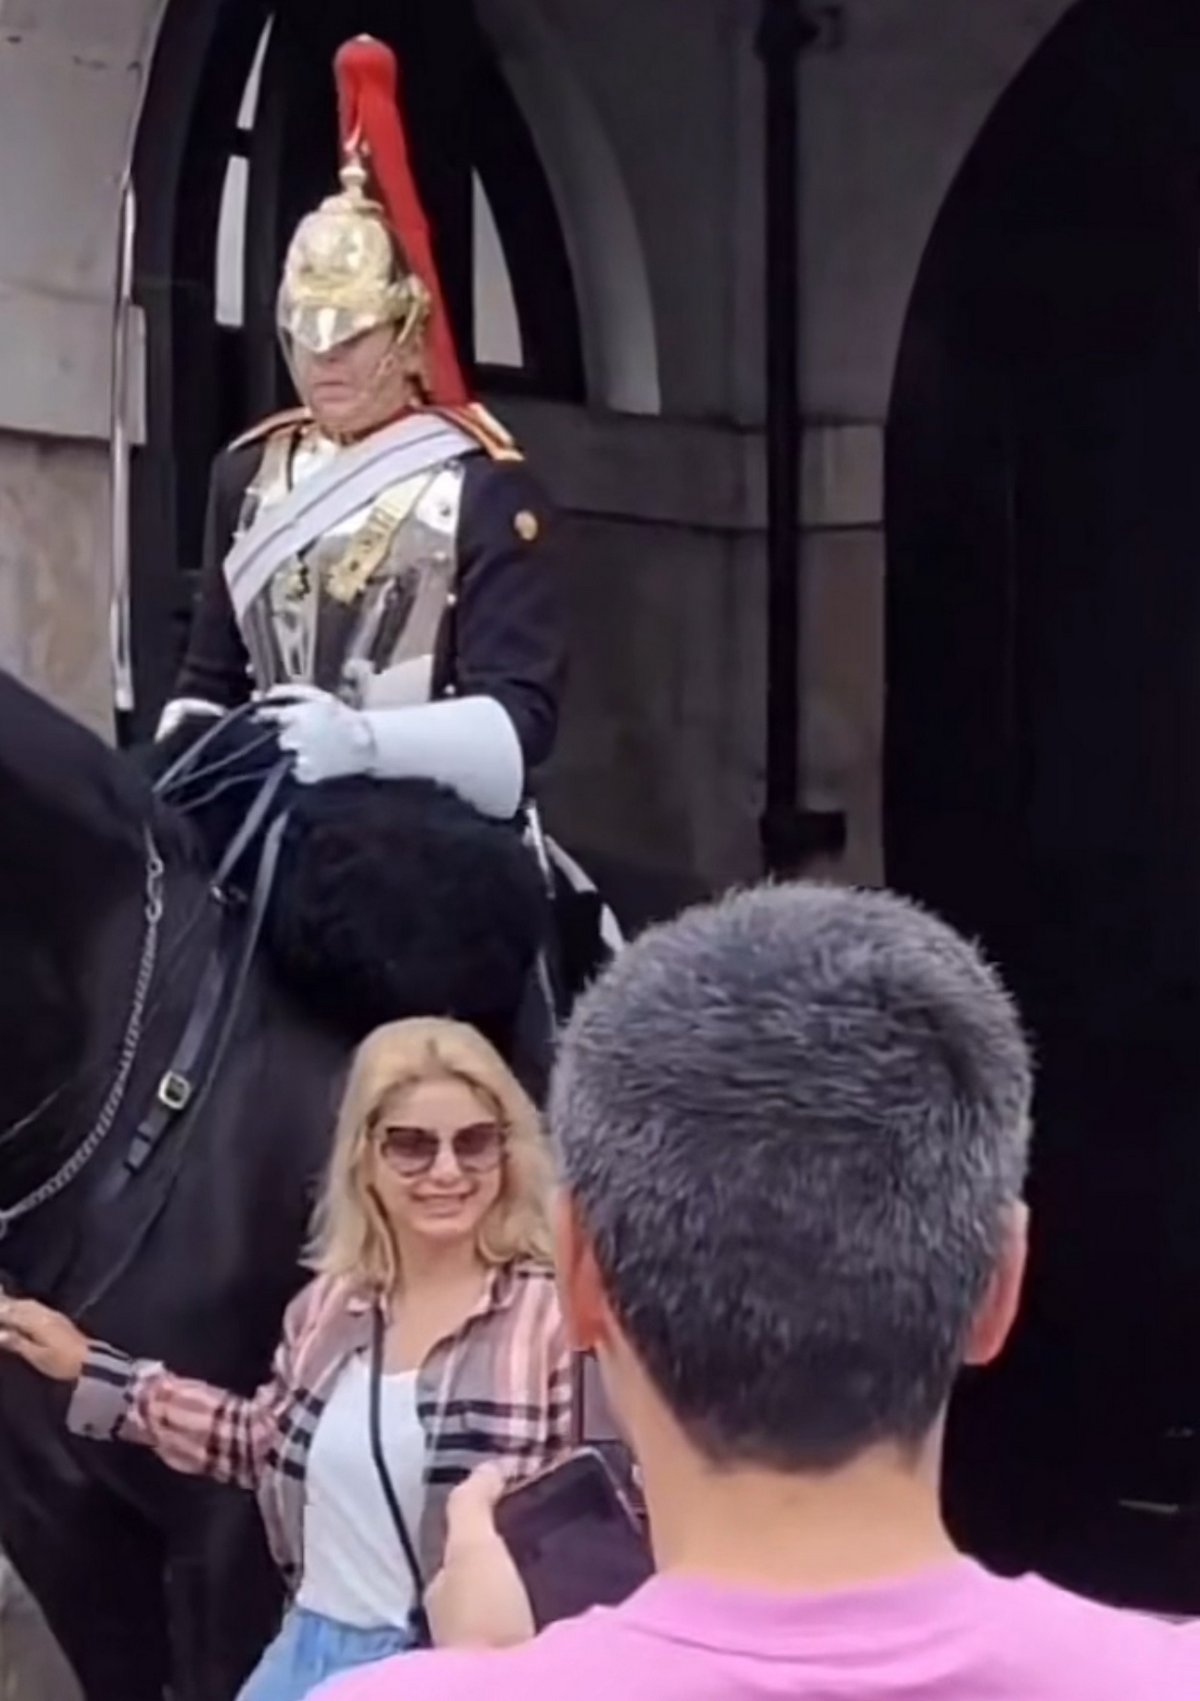 Une touriste se fait engueuler par un garde de la Reine après avoir touché son cheval